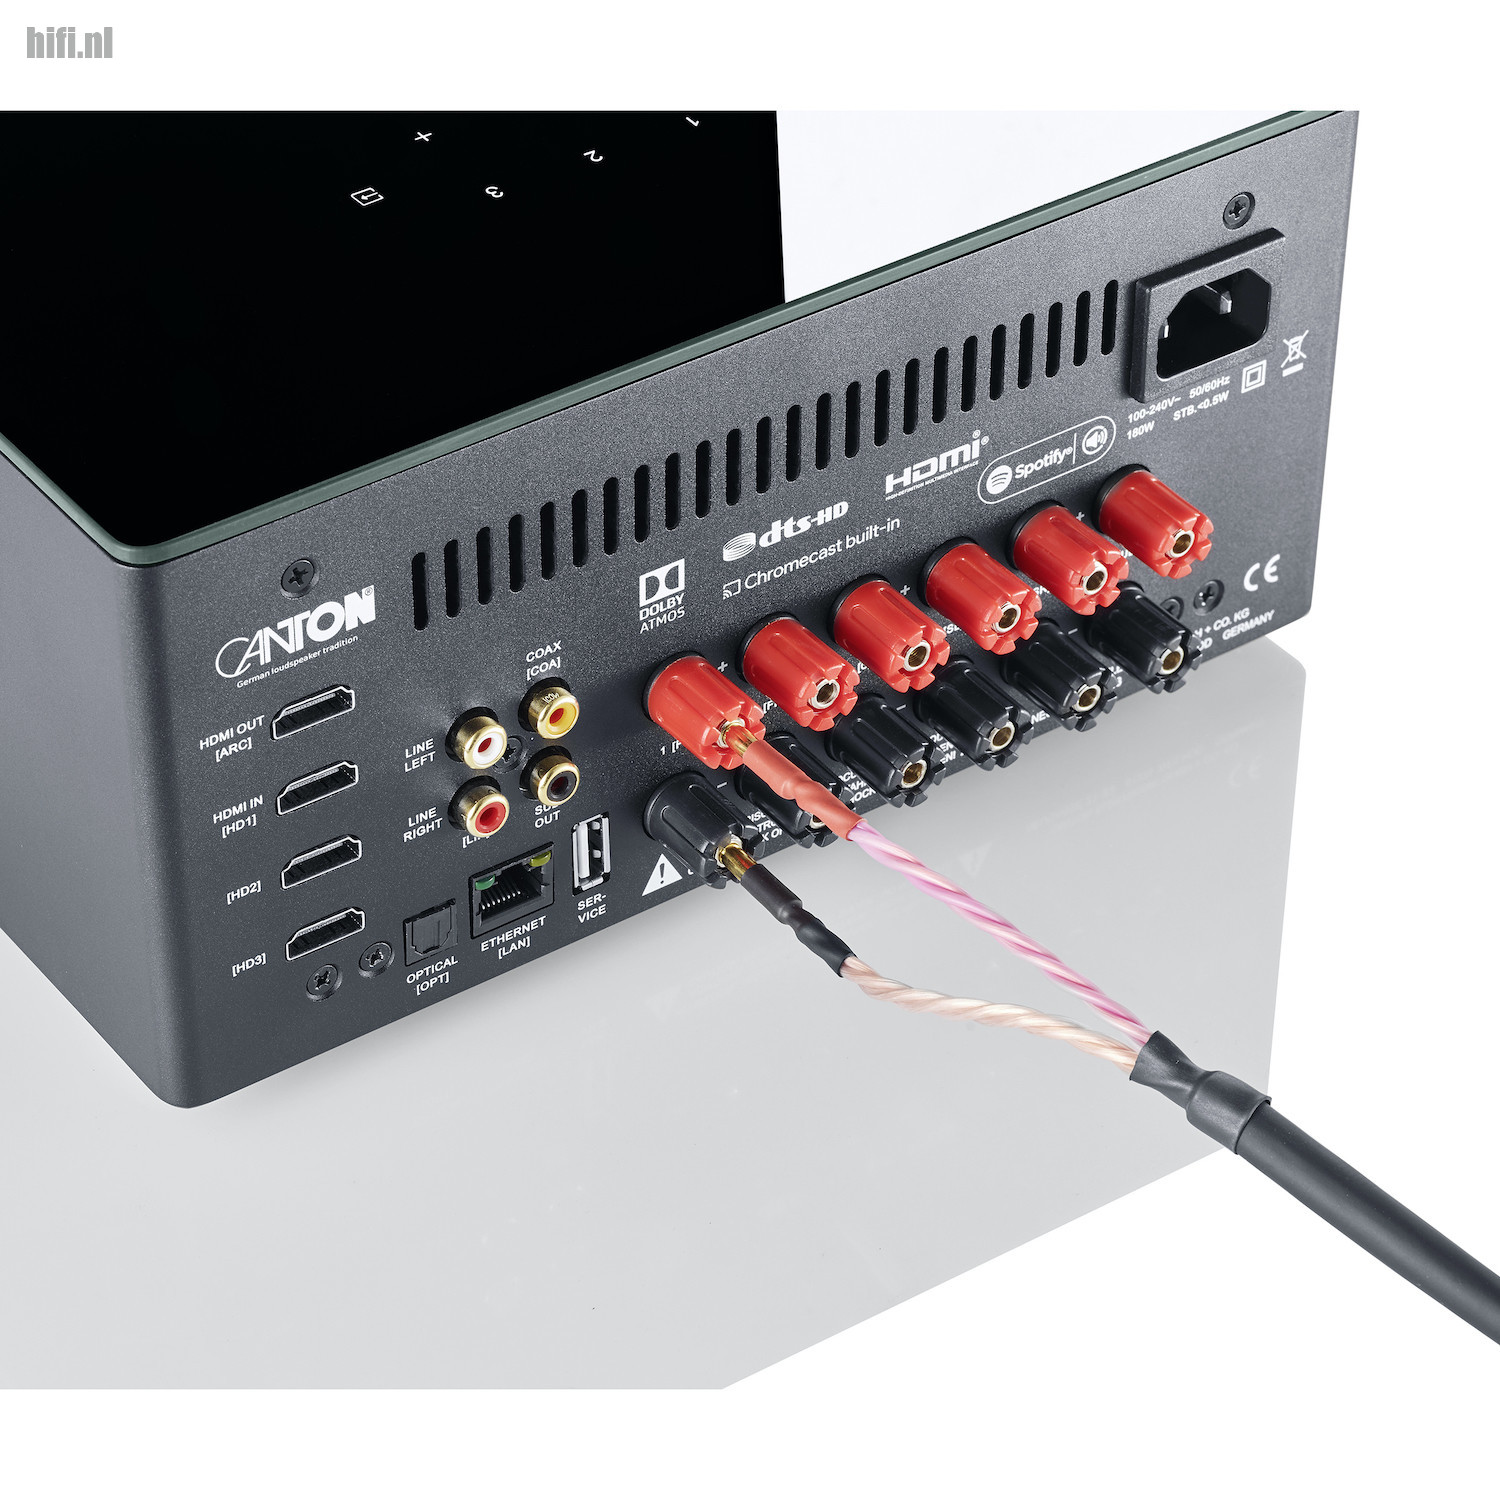 volgens Opnemen Vaag Review Canton Smart Amp 5.1 een heel andere AV receiver